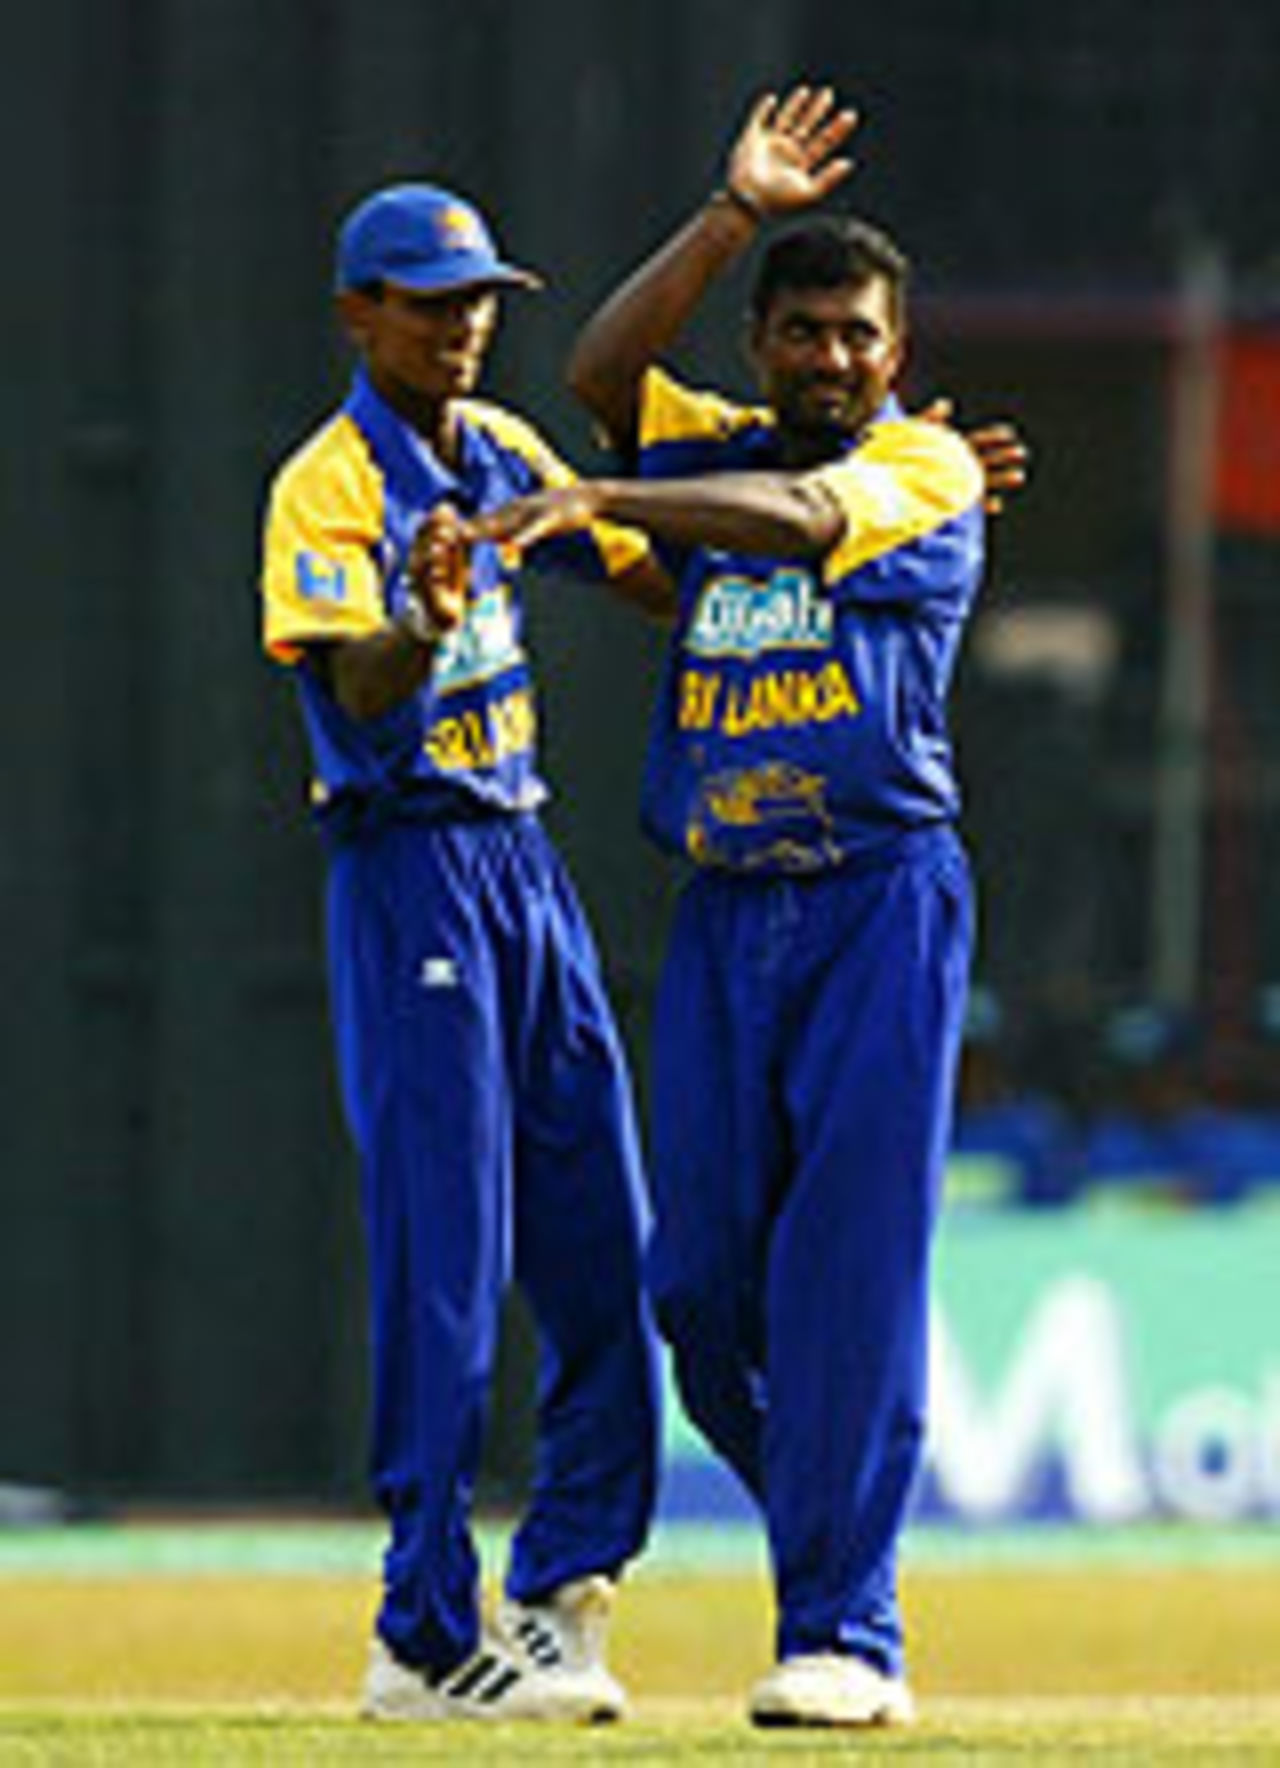 Muralitharan was back to his best, Sri Lanka v Australia, Colombo, February 27, 2004